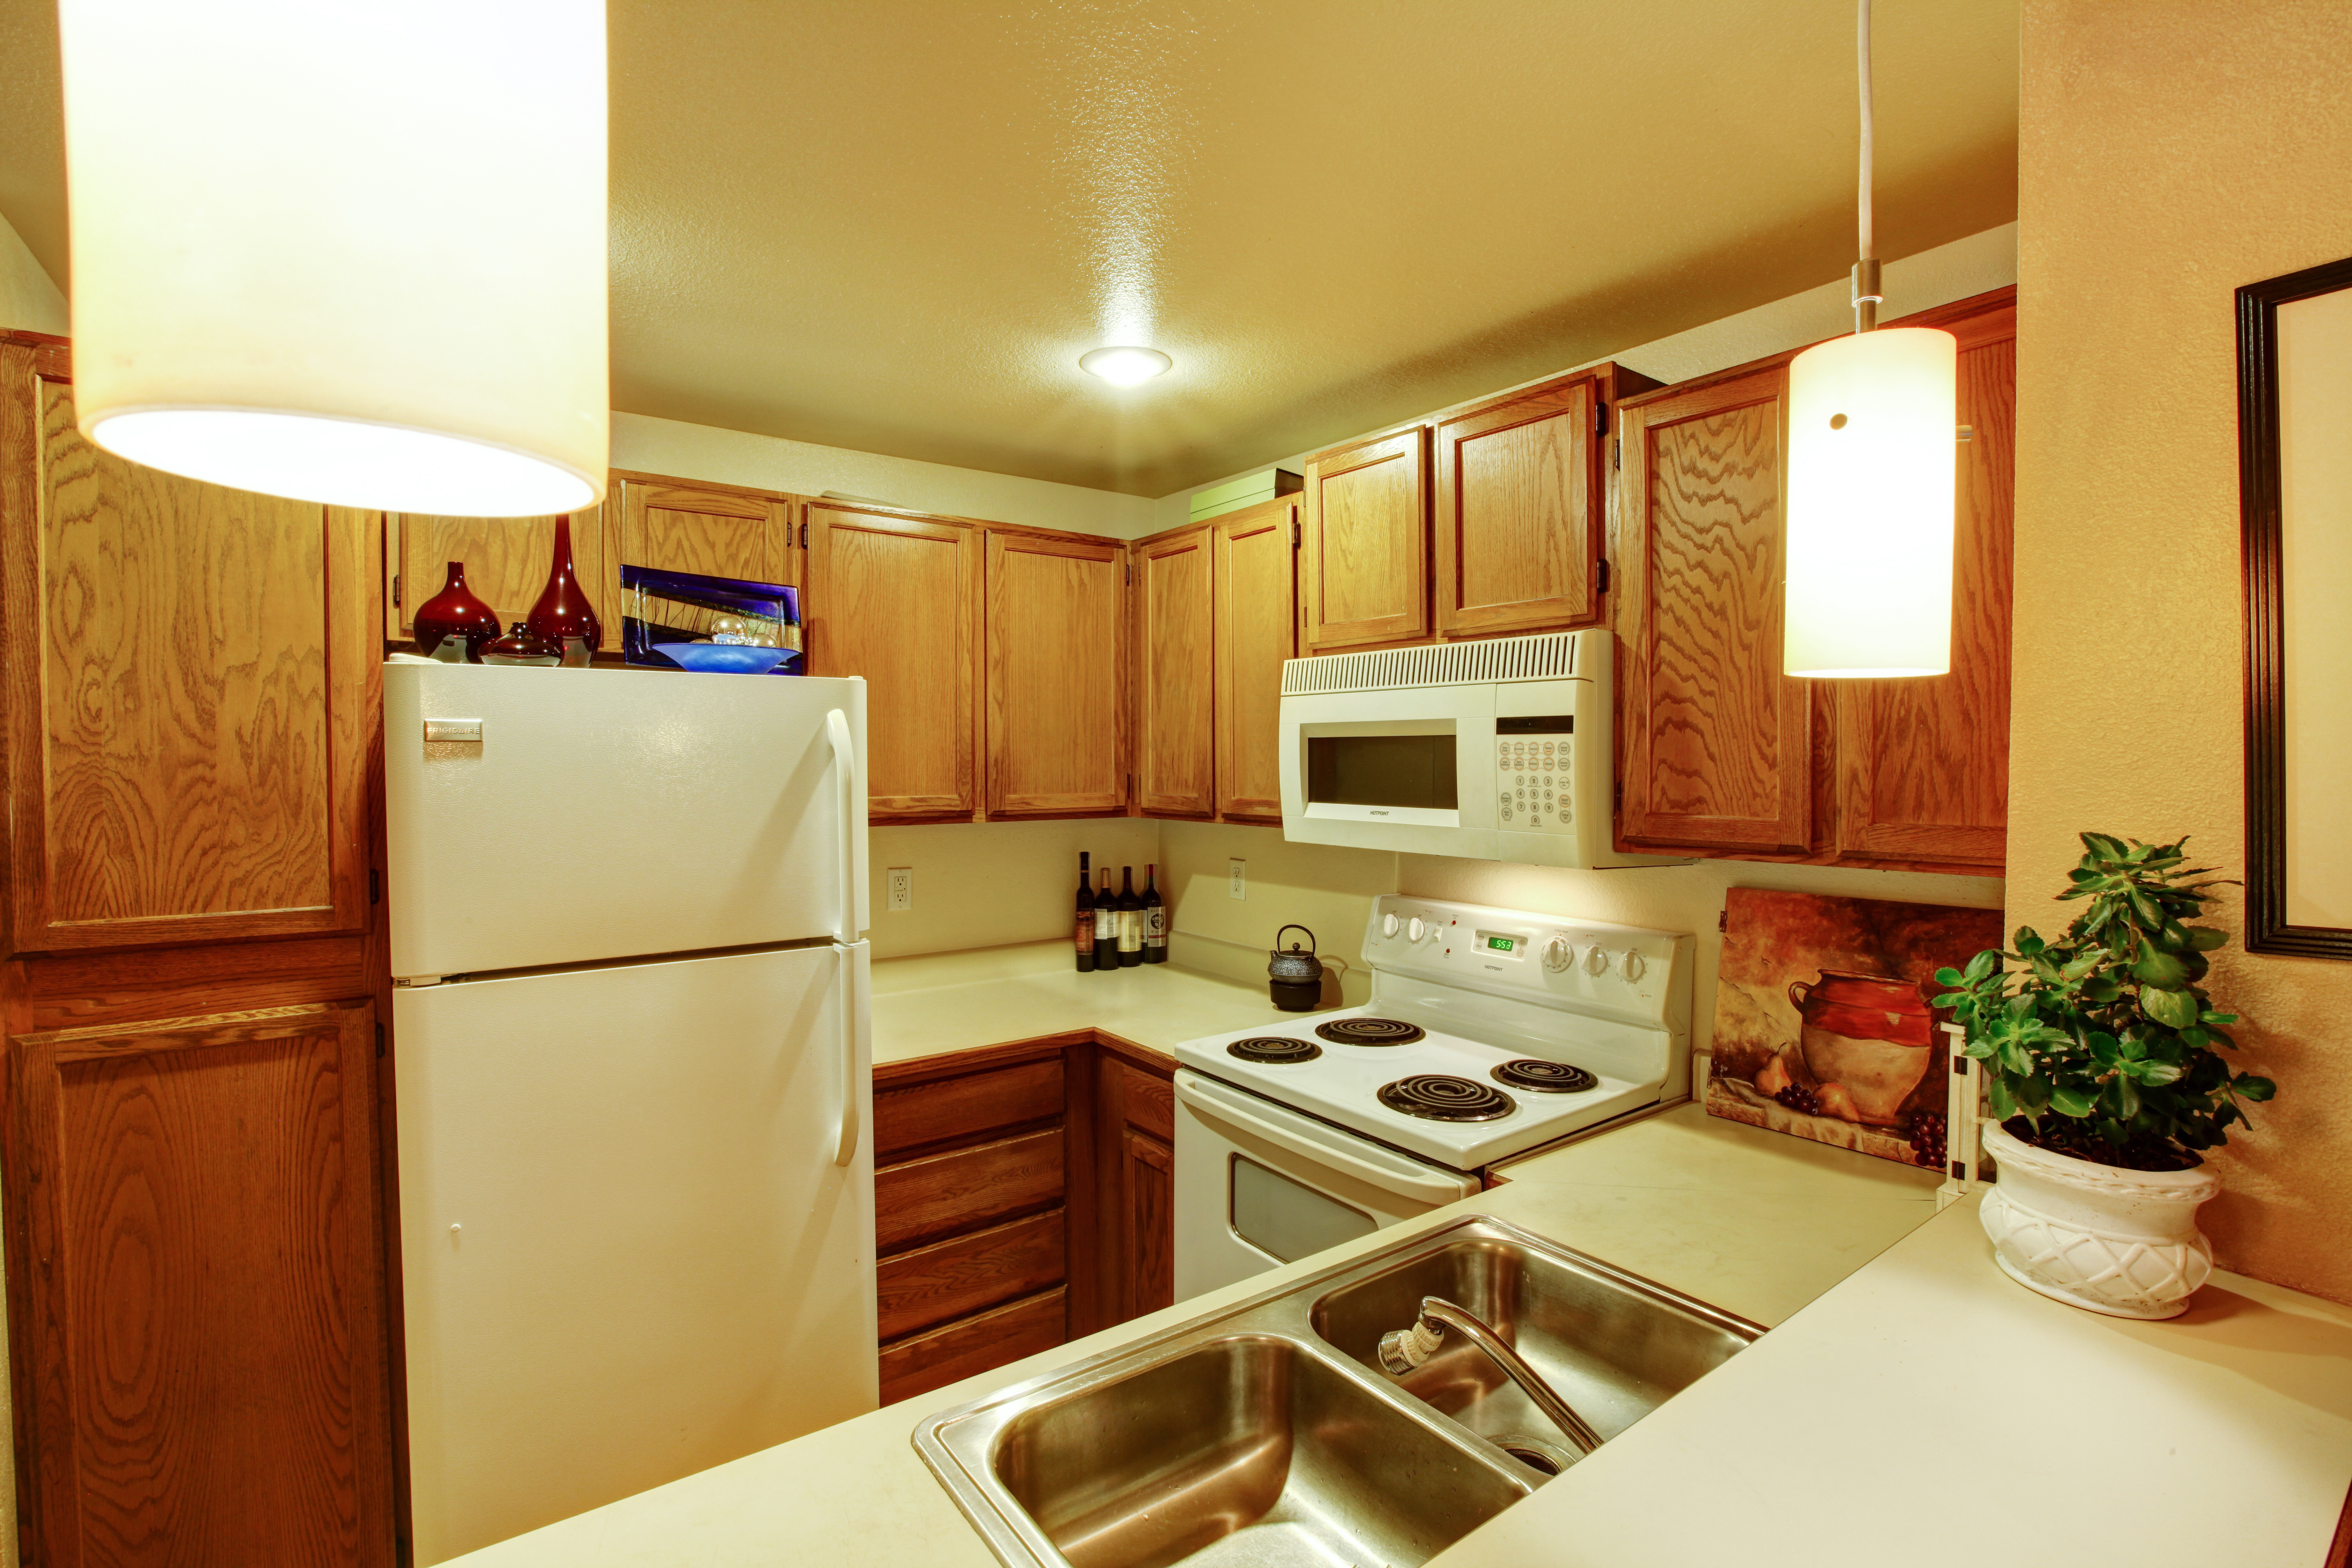 Vista de armarios de cocina con fregadero y electrodomésticos blancos antiguos | Fuente: Shutterstock